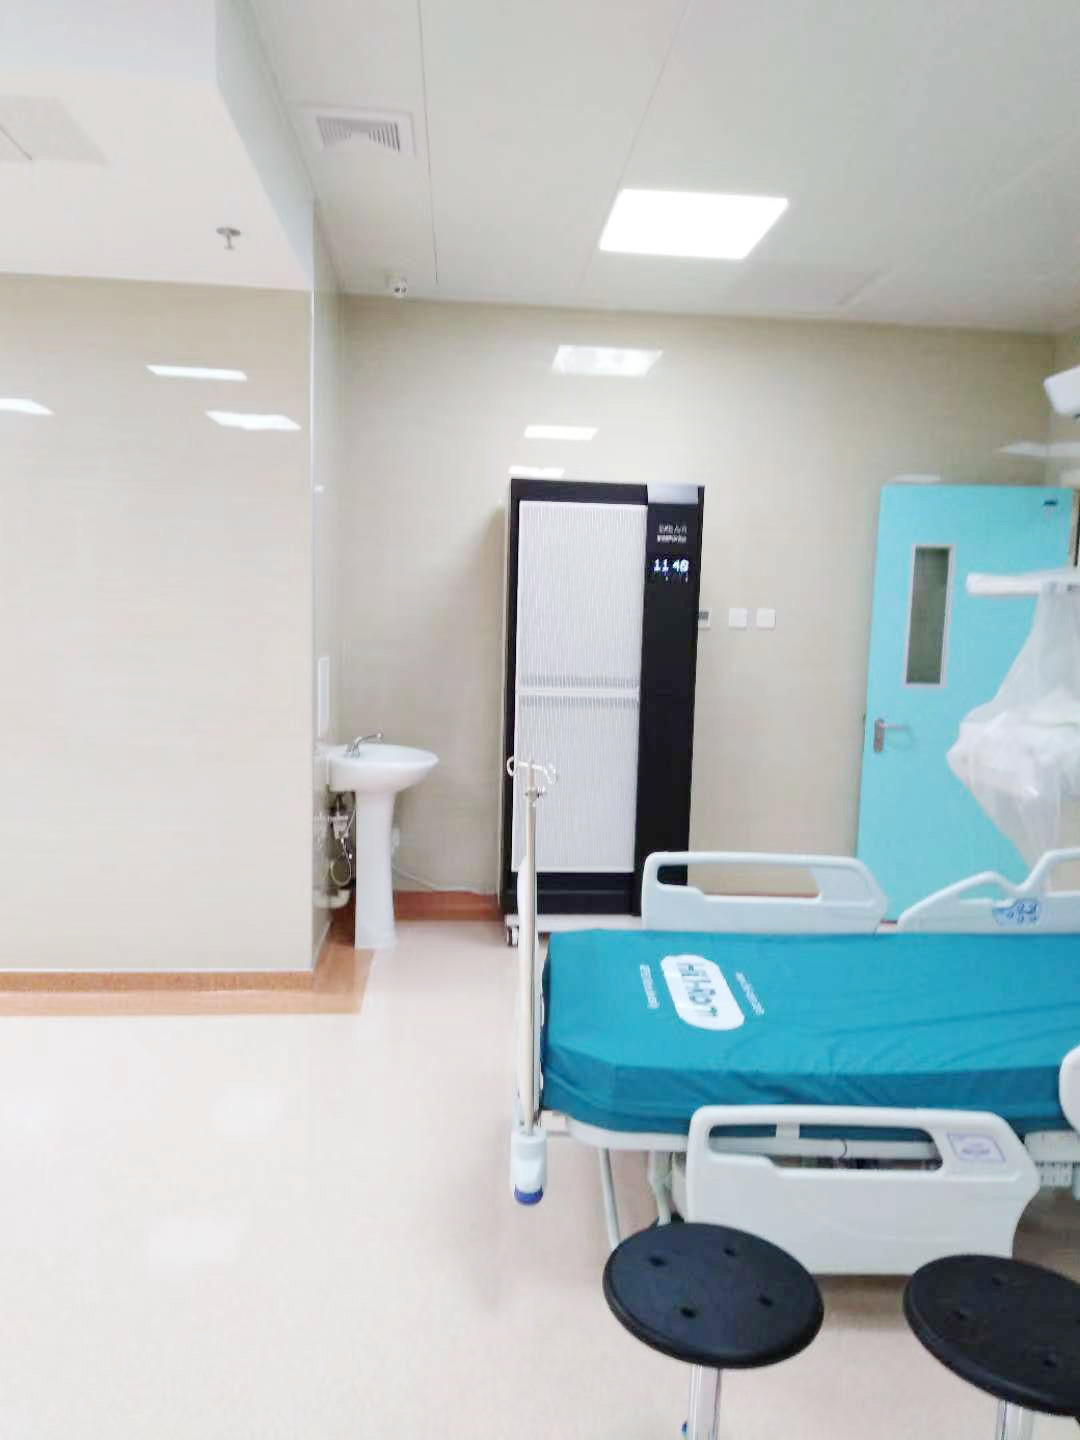 Dernière affaire concernant Hôpital central de Tianjin troisième